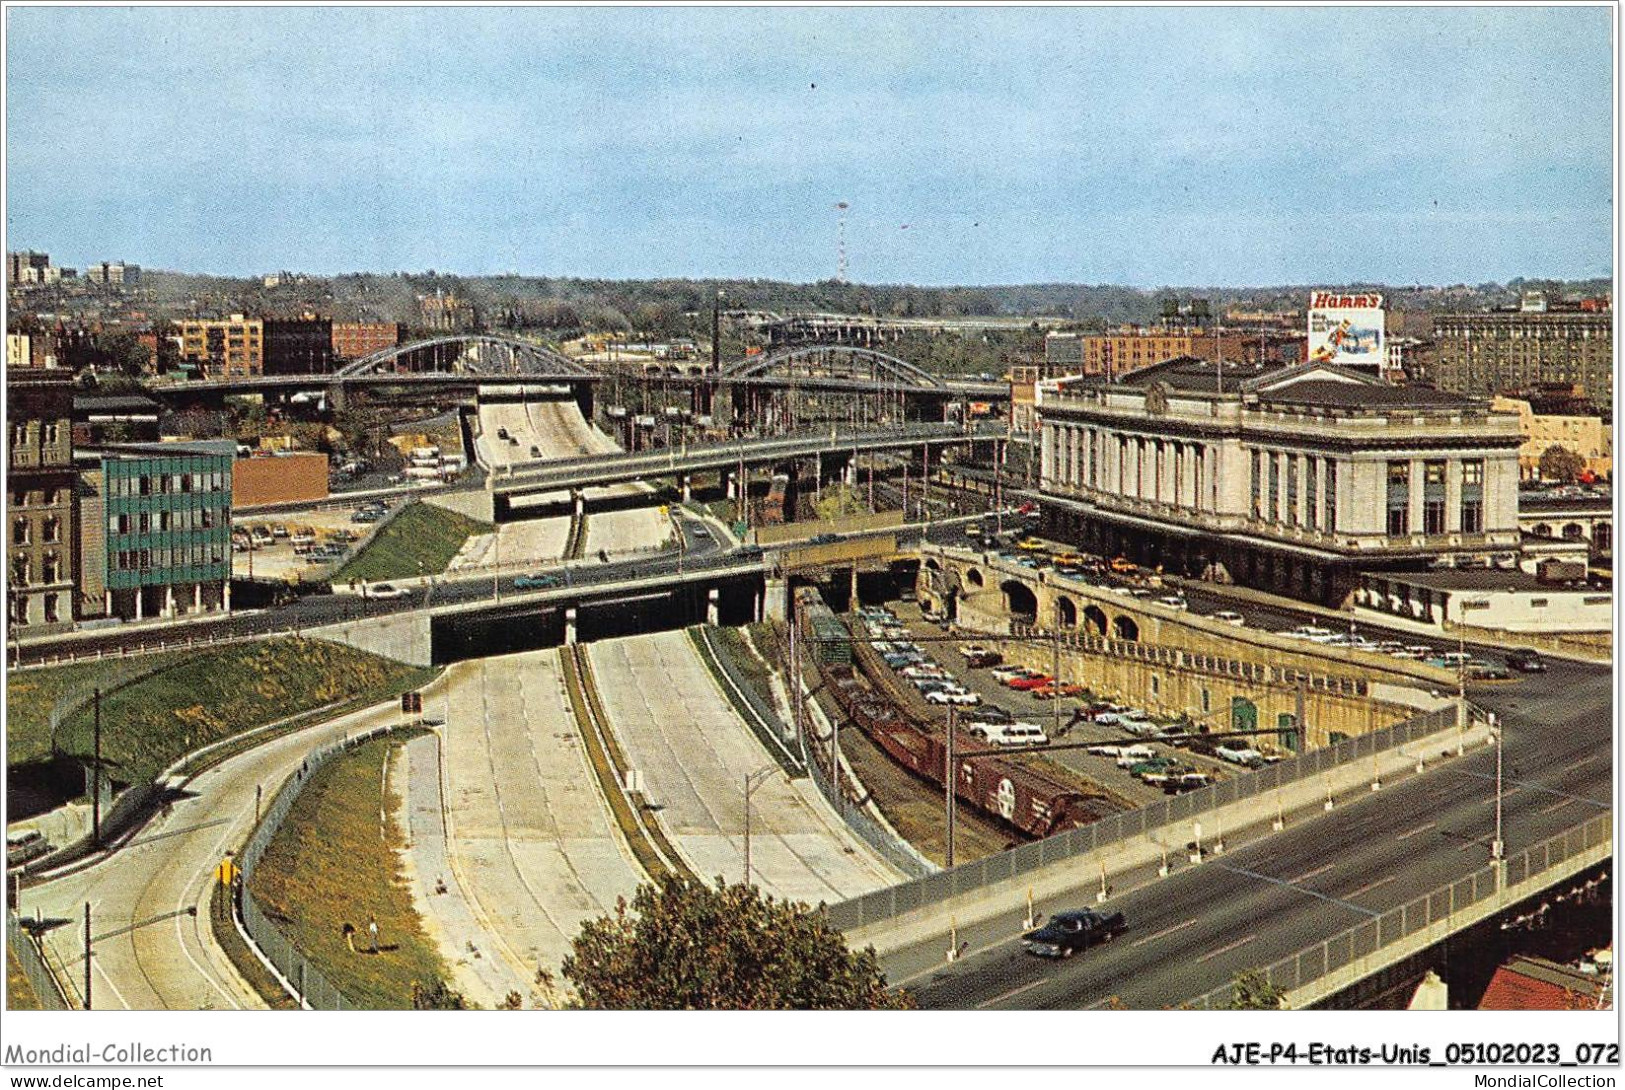 AJEP4-ETATS-UNIS-0317 - Jones Falls Expressway - Baltimore - MARYLAND - Baltimore